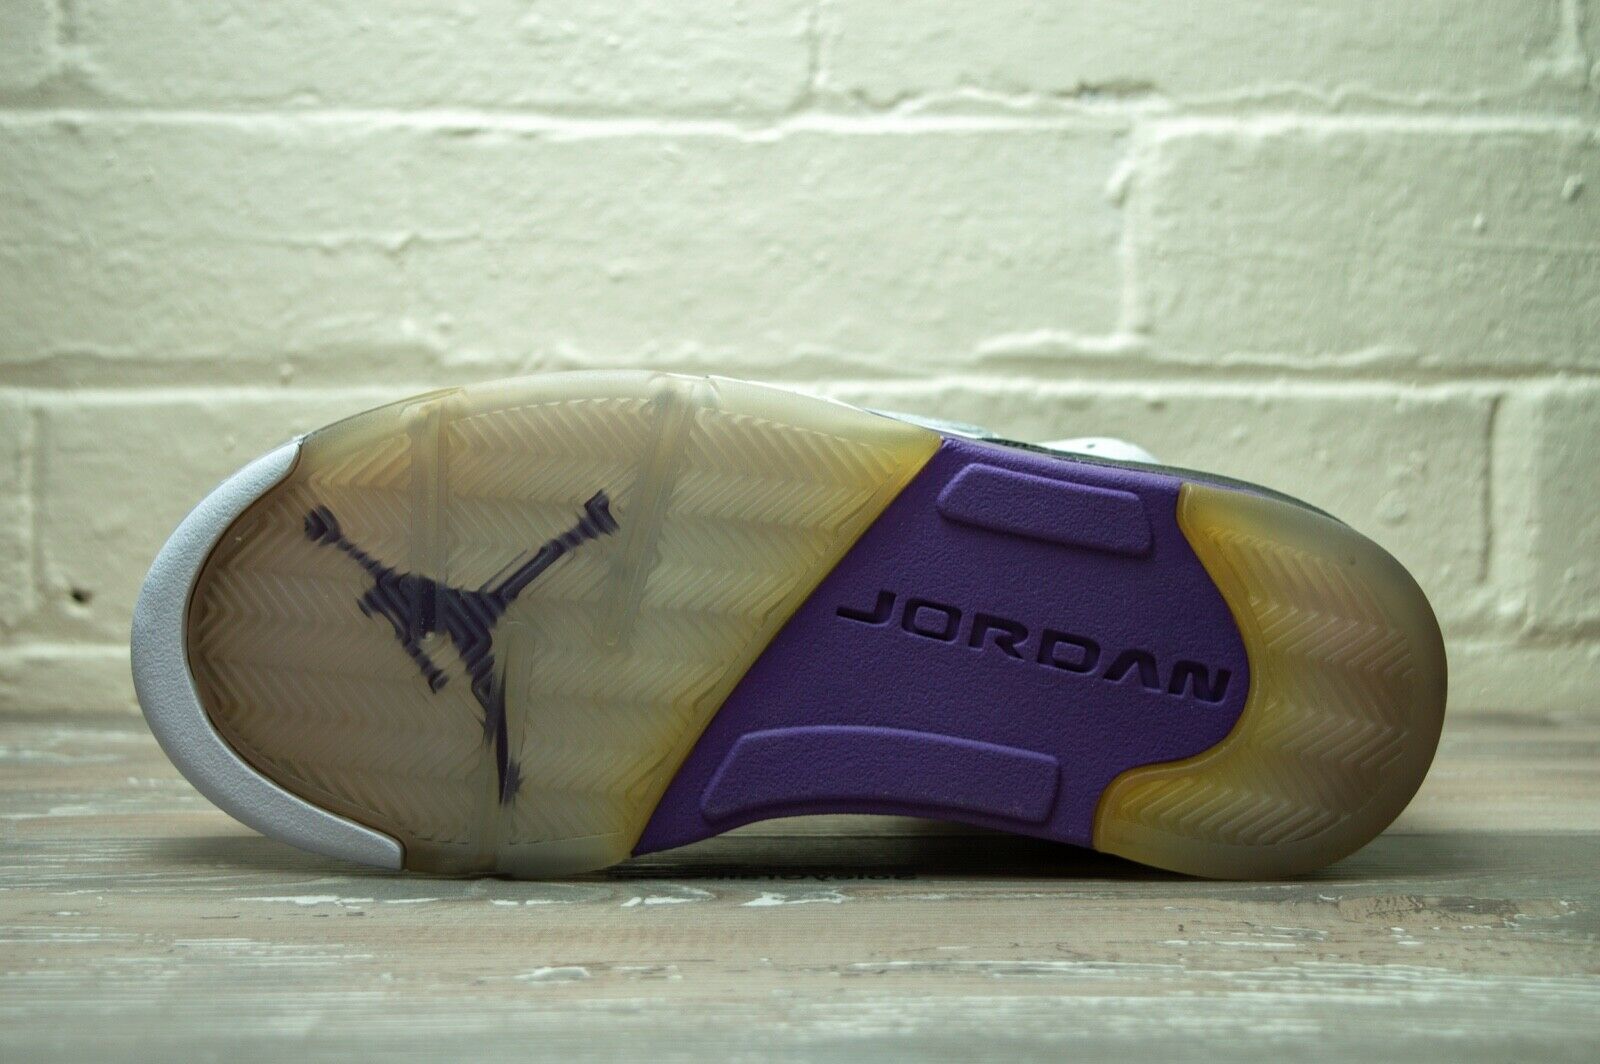 Nike Air Jordan Son Of Club Purple 512245 106 -Nike Air Jordan Son Of Club Purple 512245 106 -